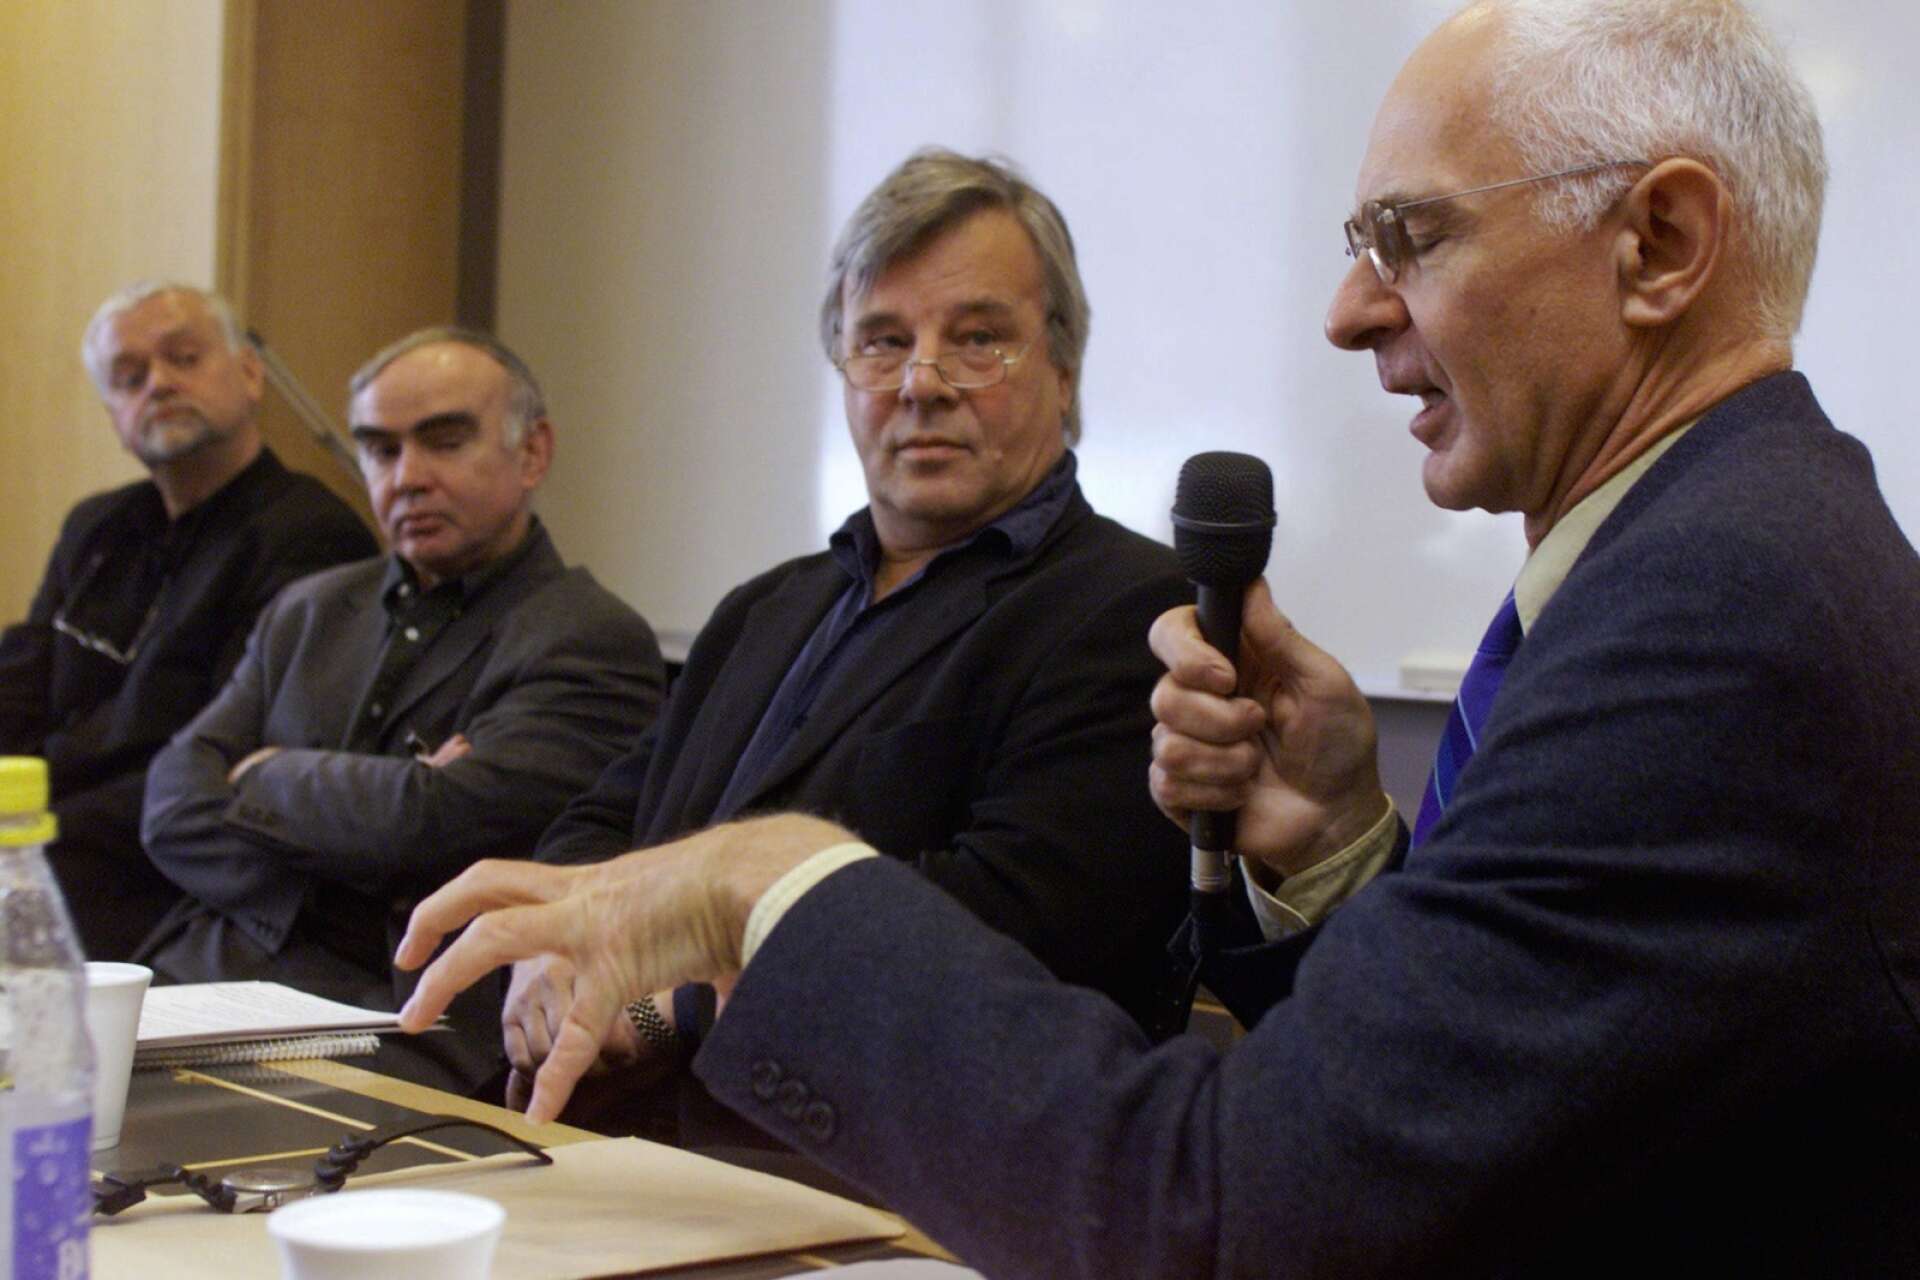 Arne Ruth i egenskap av gästprofessor om yttrande- och tryckfrihet och censur på ett möte i Oslo 2002 tillsammans med professor Rune Ottesen, författaren och journalisten Jan Guillou och Jonathan Steel från den brittiska tidningen The Guardian.